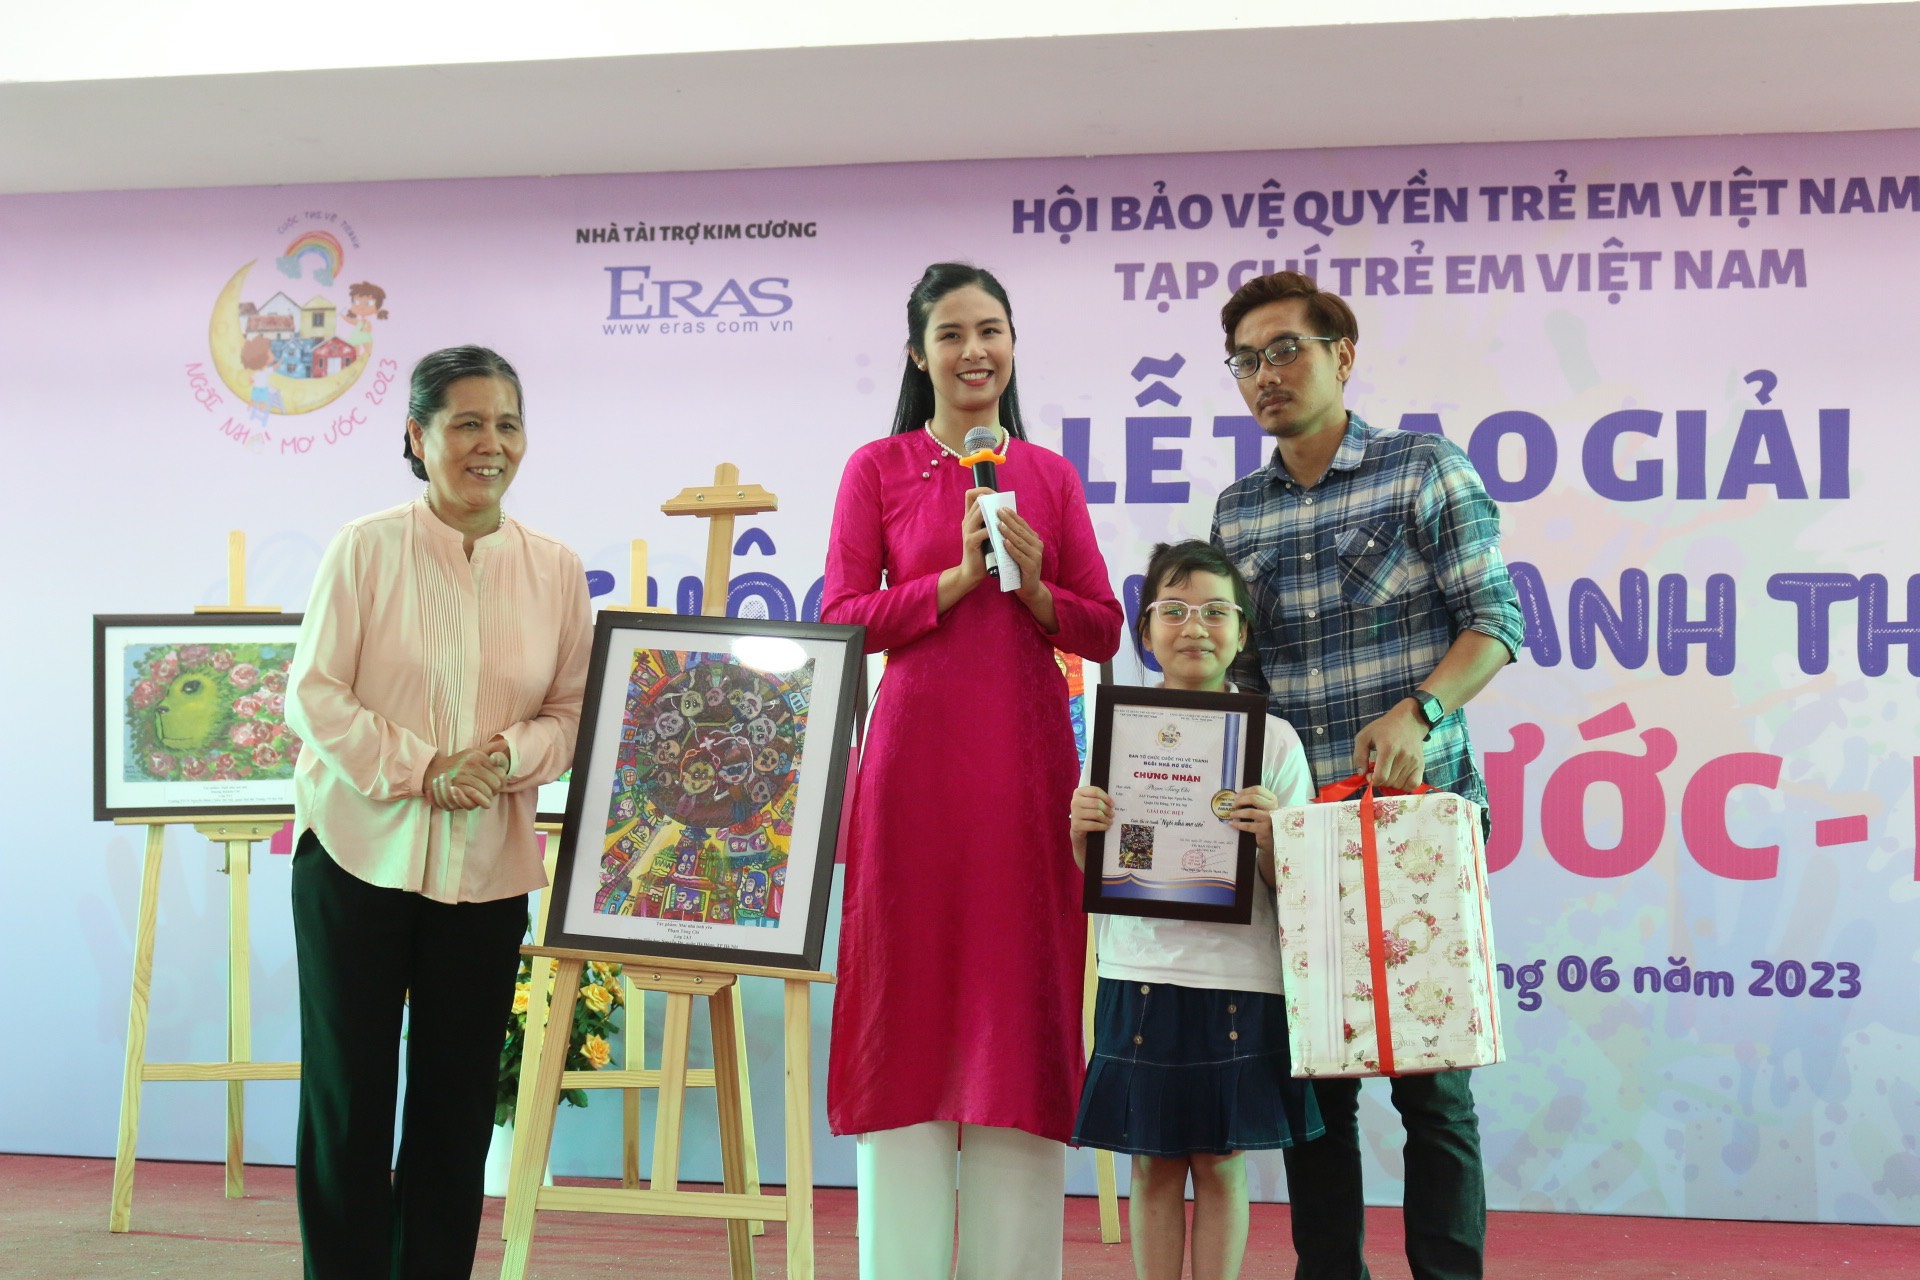 Bà Nguyễn Thị Thanh Hoà - Chủ tịch Hội BVQTEVN và Hoa hậu Ngọc Hân trao giải cho thí sinh đoạt giải Đặc biệt cuộc thi vẽ tranh. 